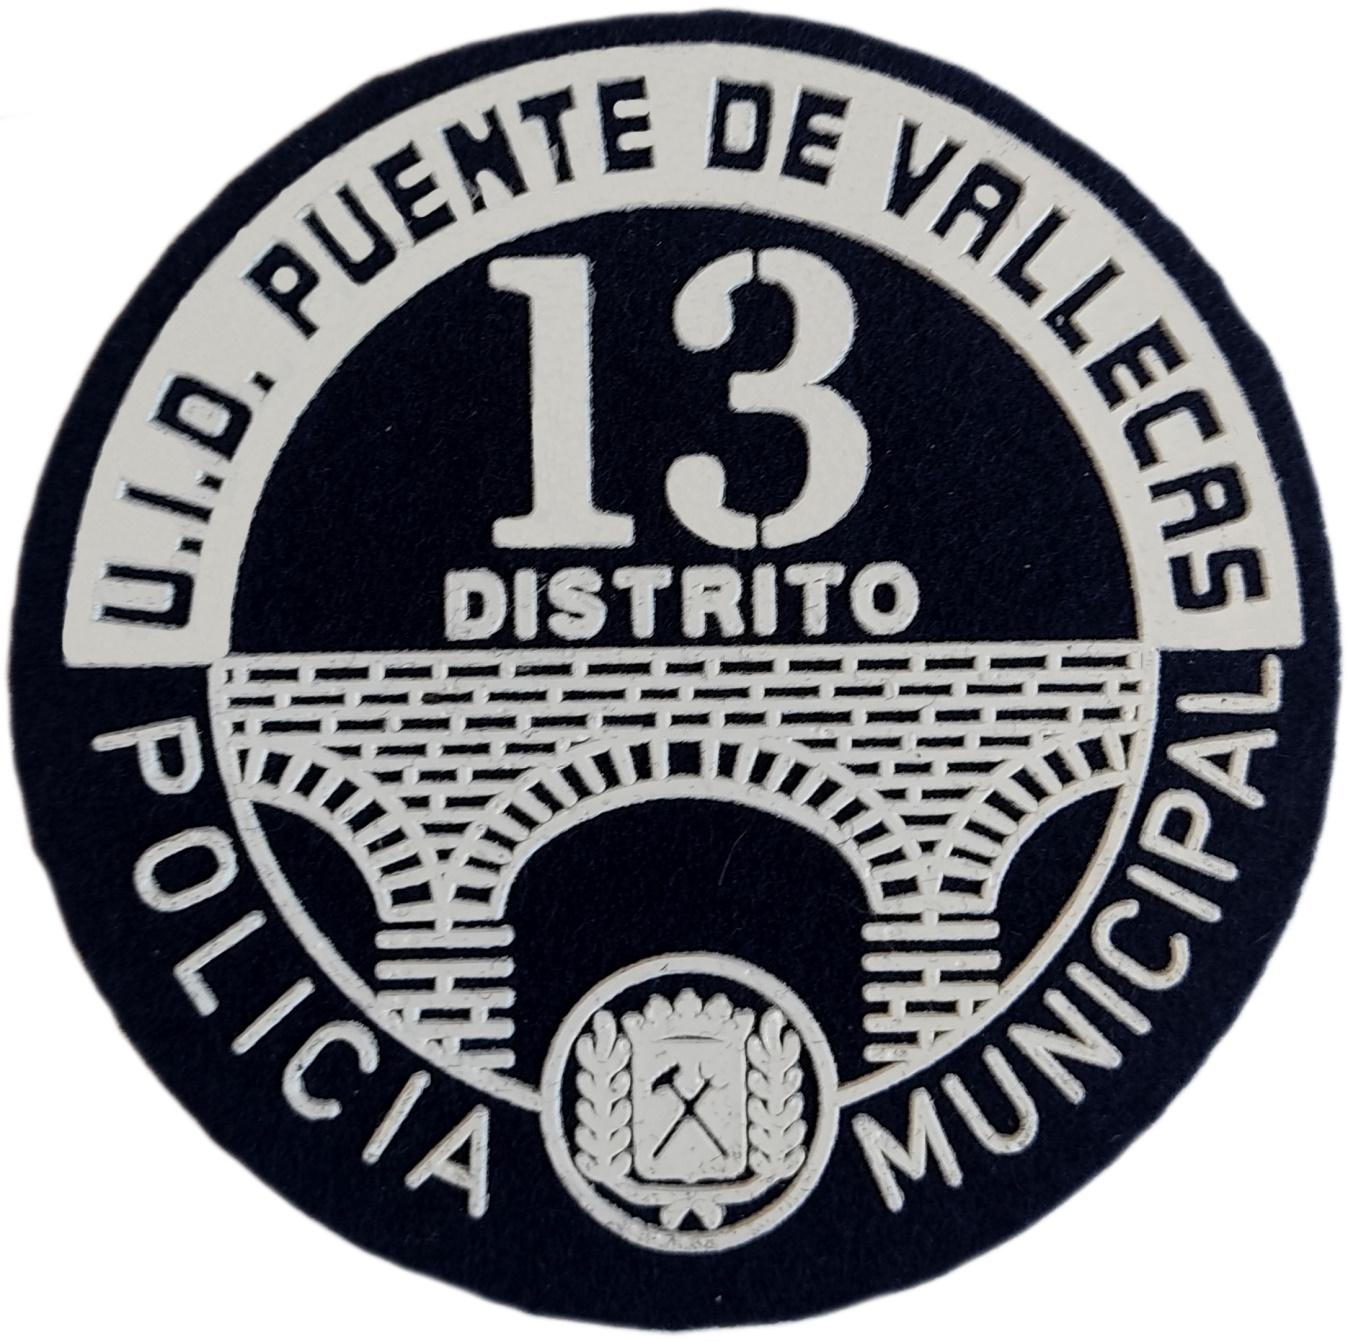 Policía Municipal Madrid Distrito 13 Puente de Vallecas UID parche insignia emblema distintivo